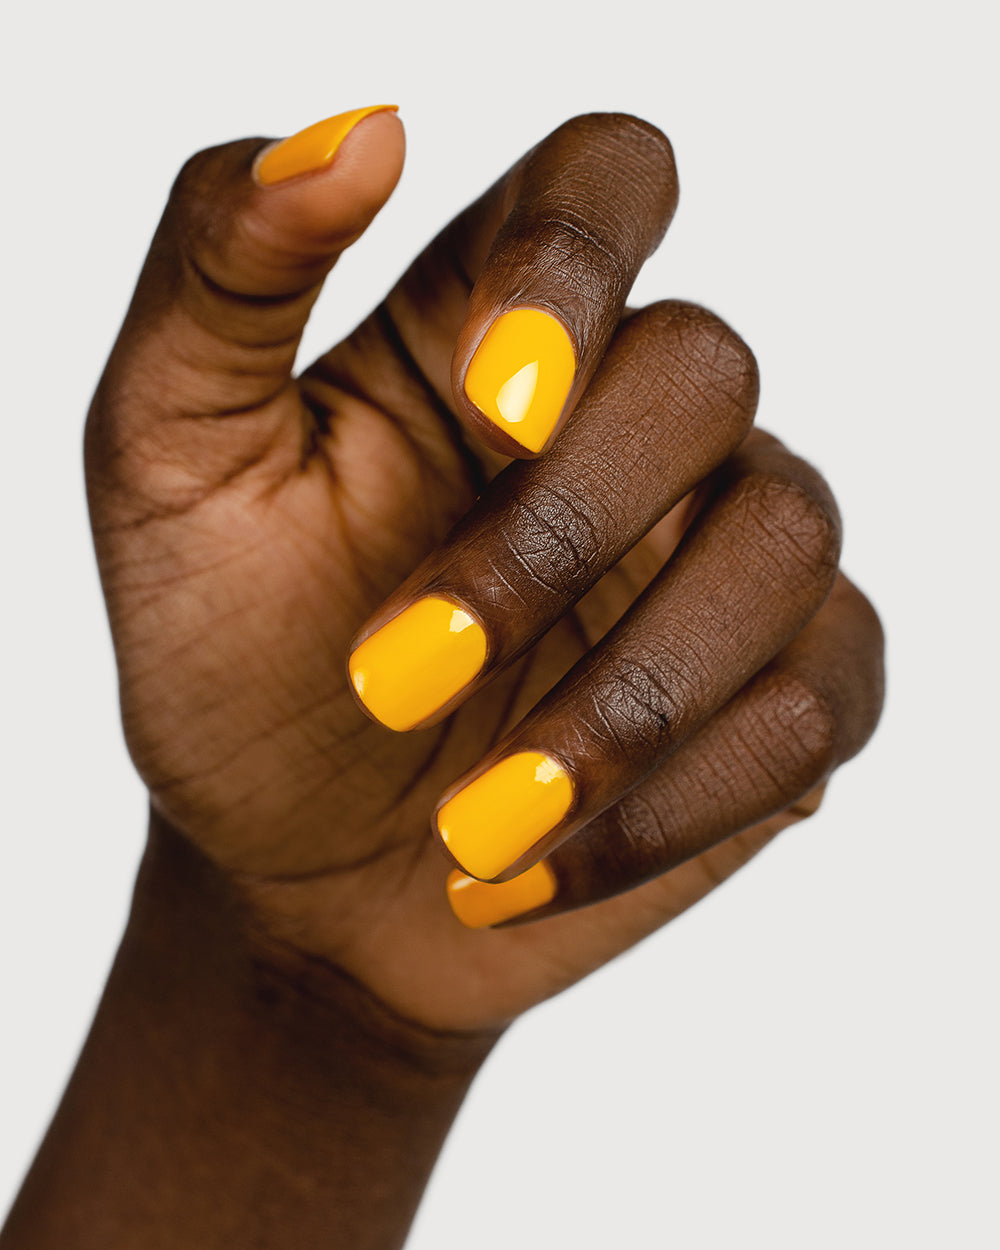 Sunflower yellow nail polish hand swatch on dark skin tone